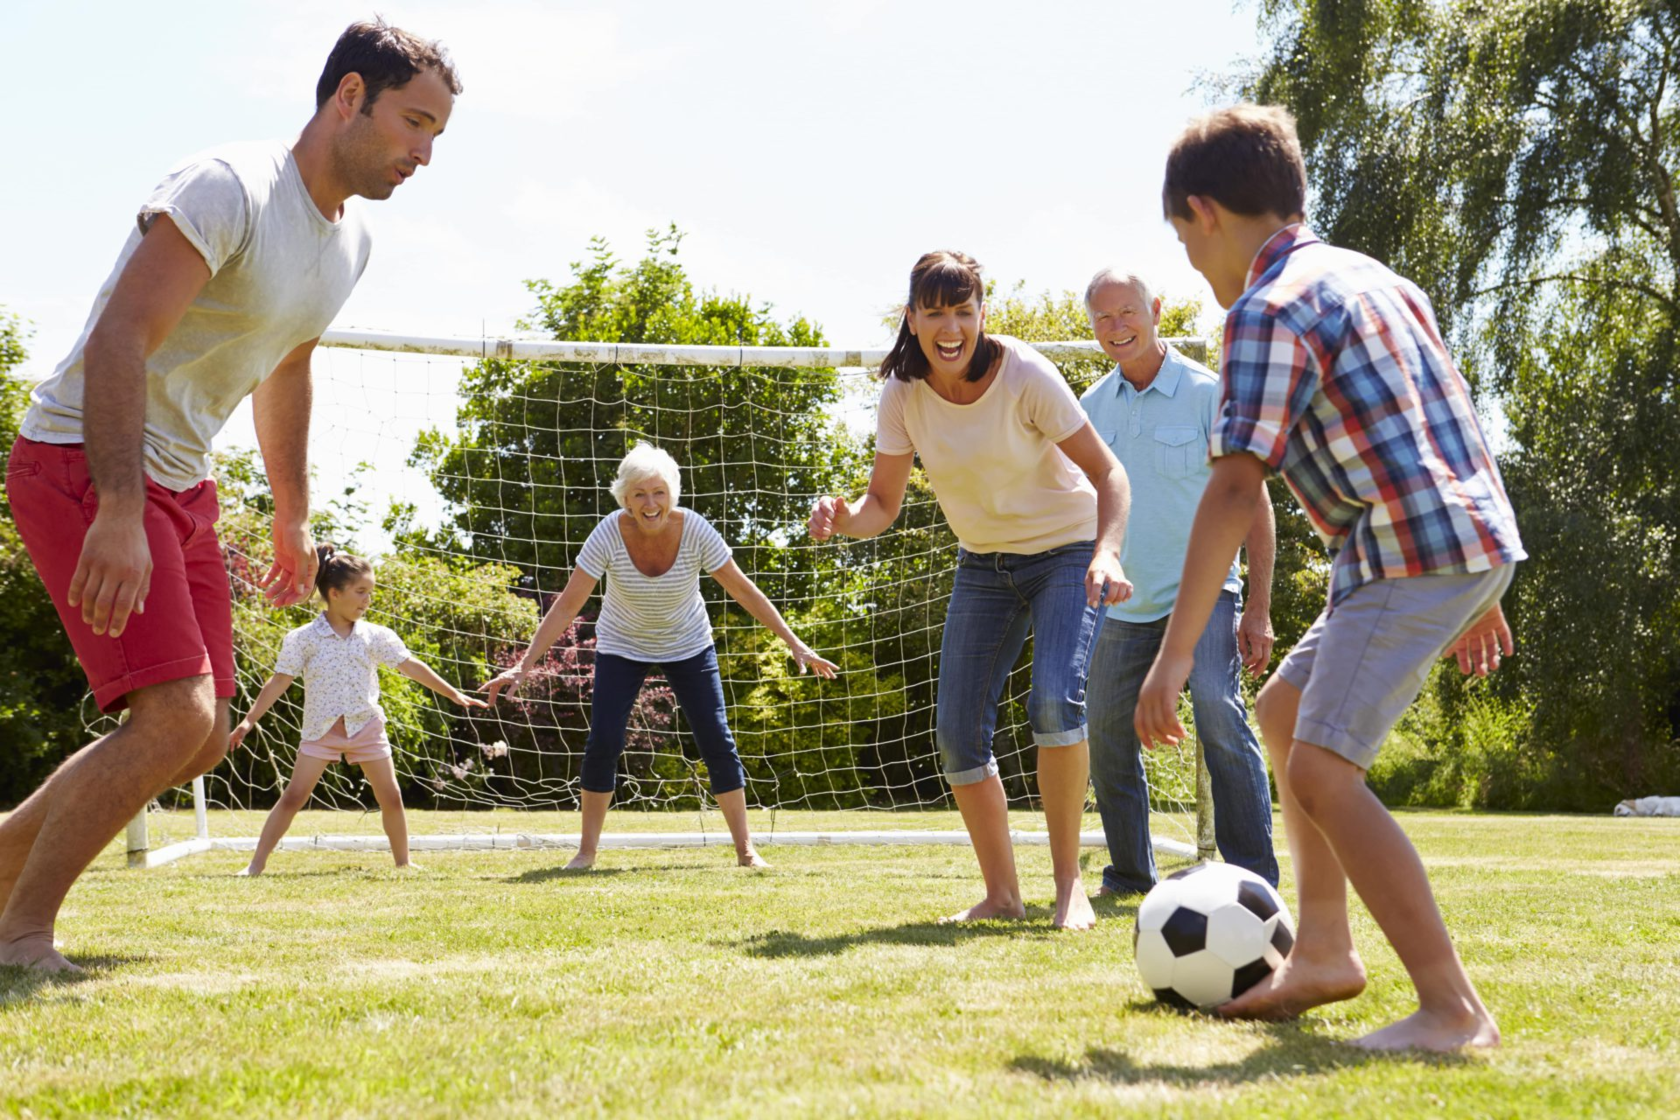 Do you enjoy playing sports. Спортивные и подвижные игры. Спортивная семья. Активные игры для детей. Сеьм язанмиается спортом.